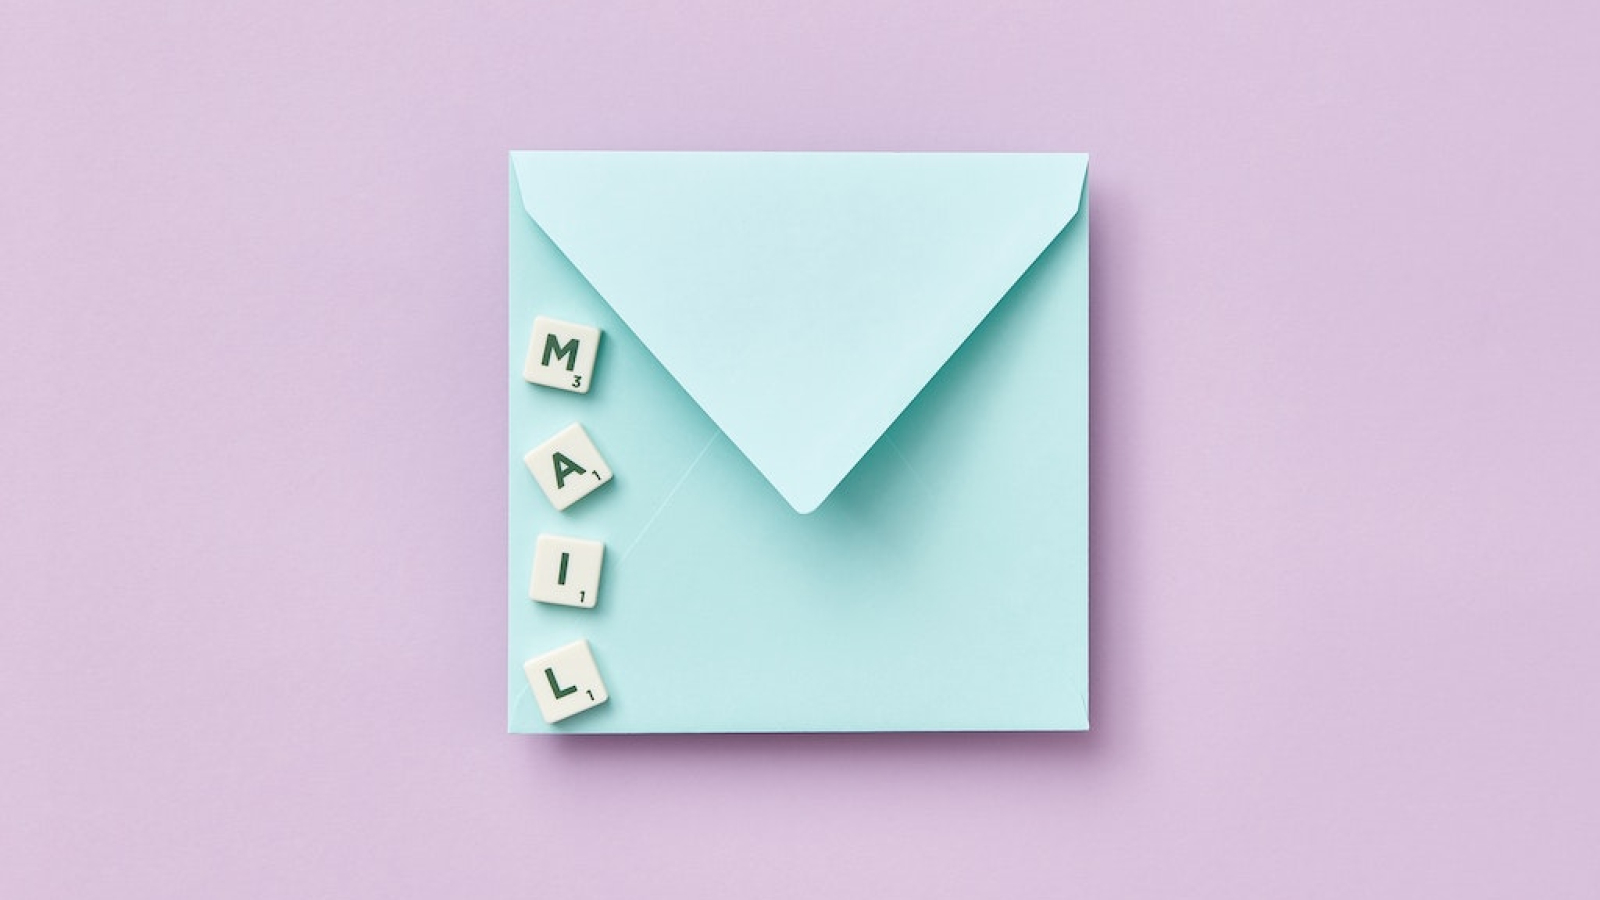 Altri modi creativi per sfruttare le email temporanee